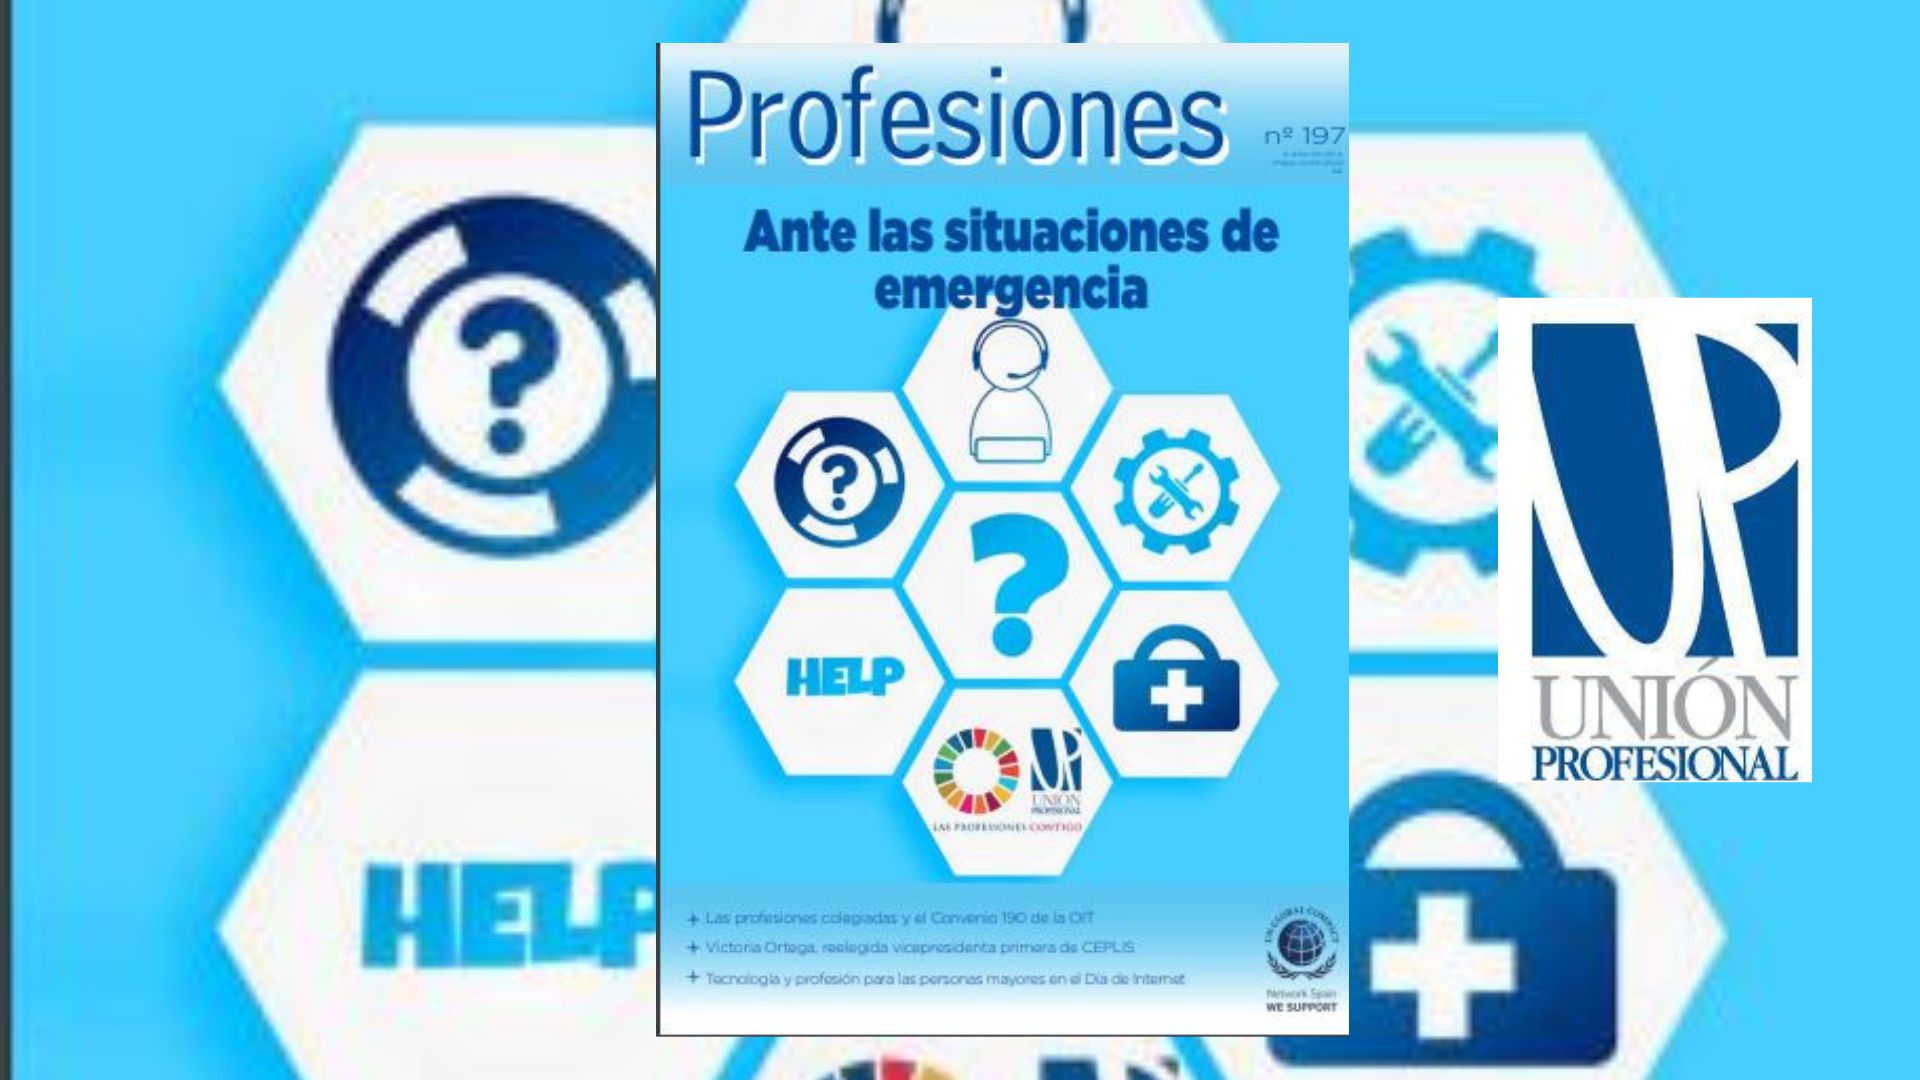 Profesiones 197: nueva edición de la revista de Unión Profesional